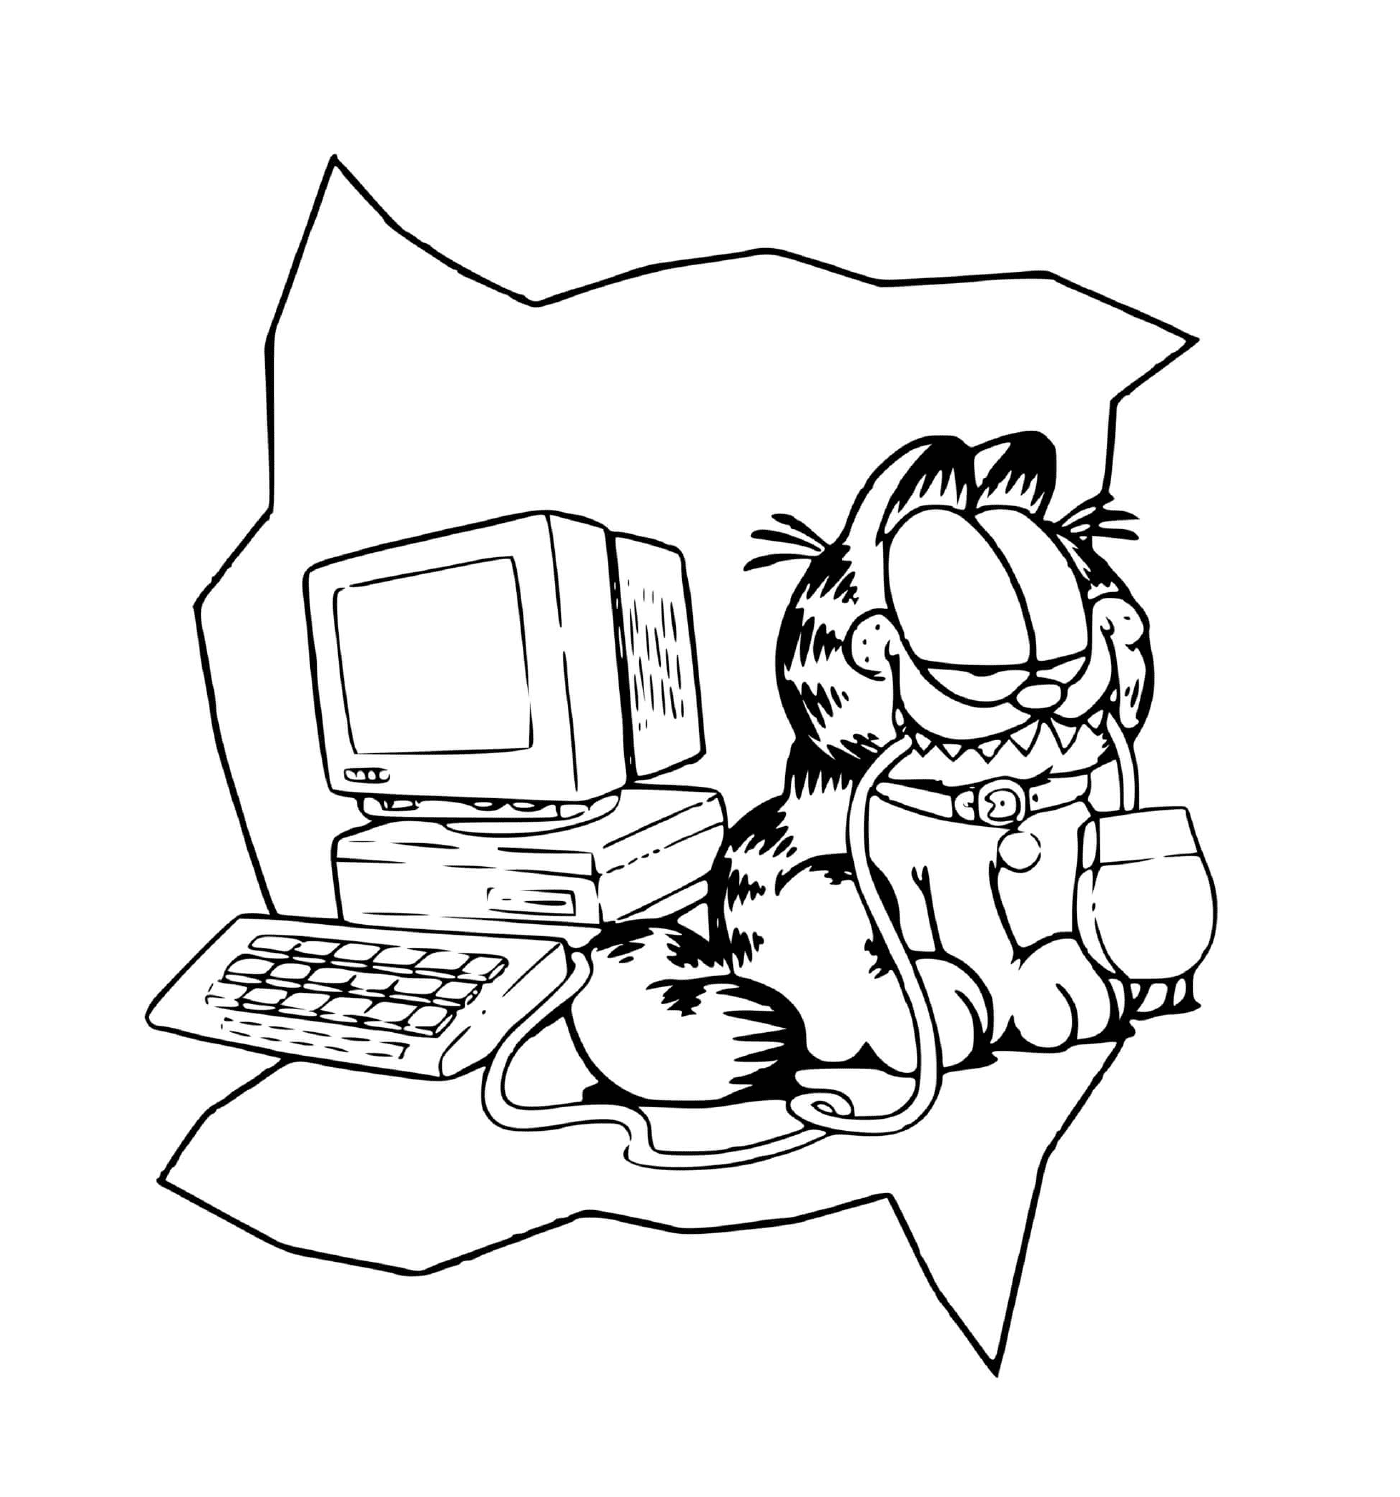 coloriage garfield adore jouer avec un ordinateur